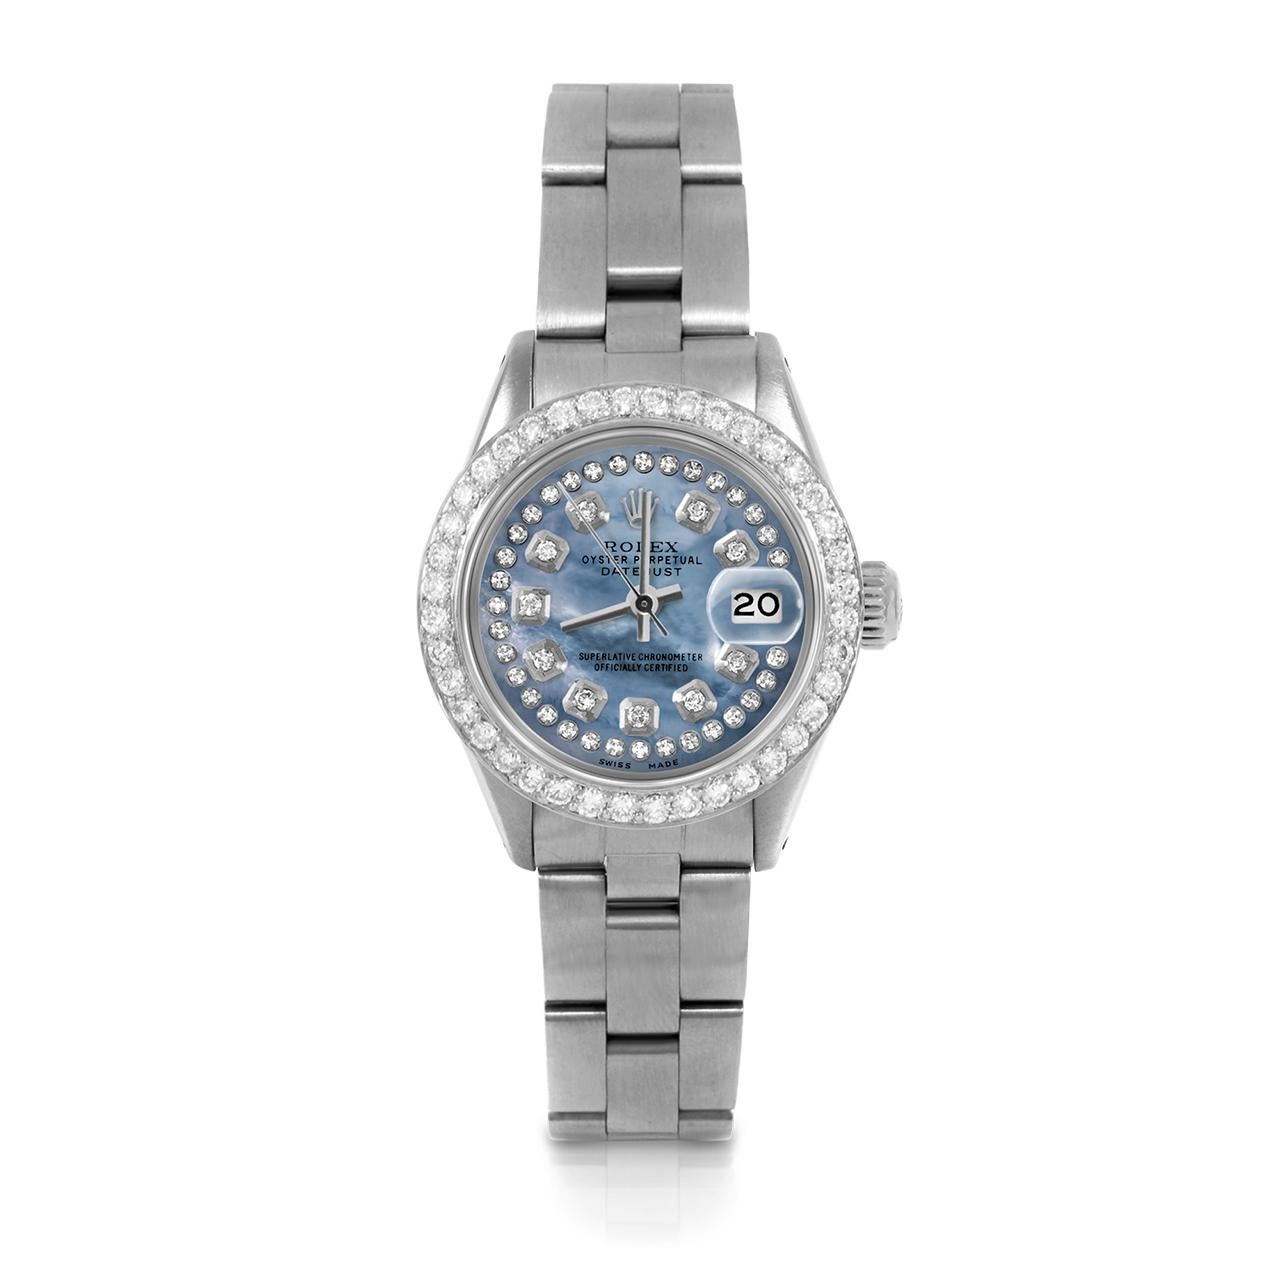 Montre Rolex 6917 26mm Datejust pour femme d'occasion, cadran bleu personnalisé en nacre avec diamants et lunette personnalisée avec 1ct de diamant sur bracelet Rolex Oyster en acier inoxydable.   

SKU 6917-SS-BLMOP-STRD-BDS-OYS


Marque/Modèle :  